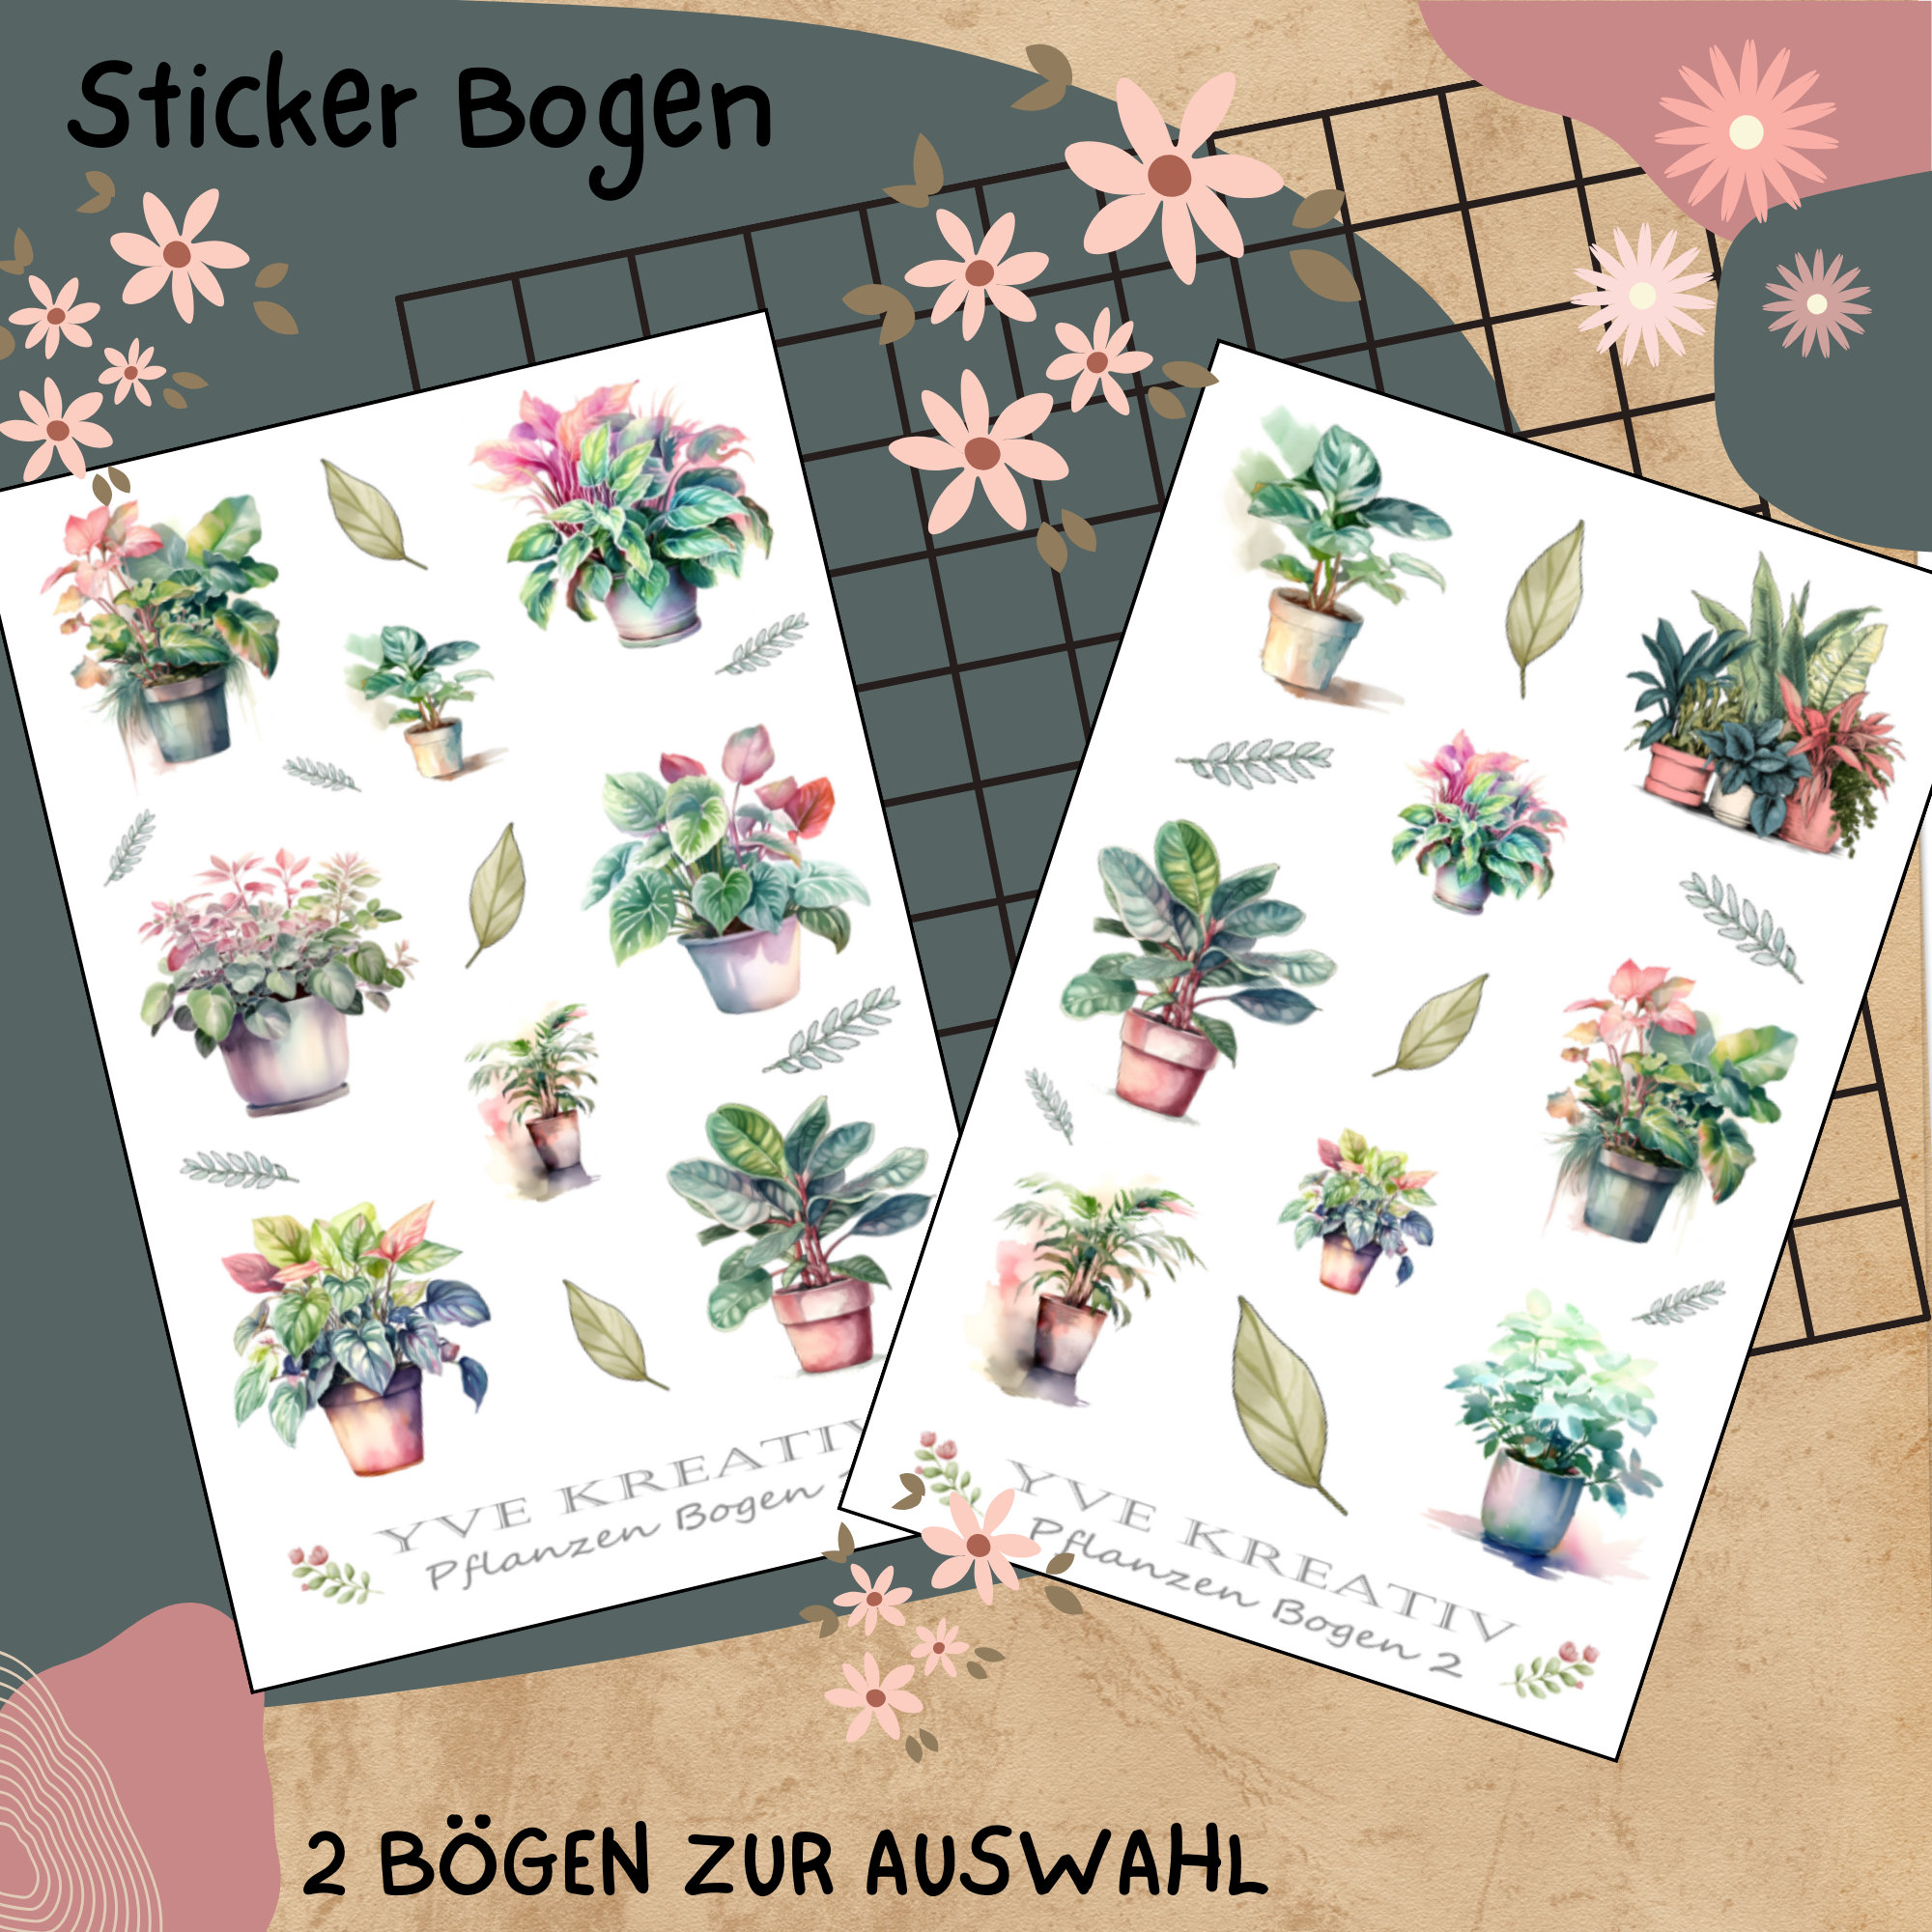 Sticker Bogen "Pflanzen Topfpflanzen Zimmerpflanzen" | Set - Aufkleber 2 Stickerbogen zur Auswahl in Weiß - Transparent - Matt - Glanz